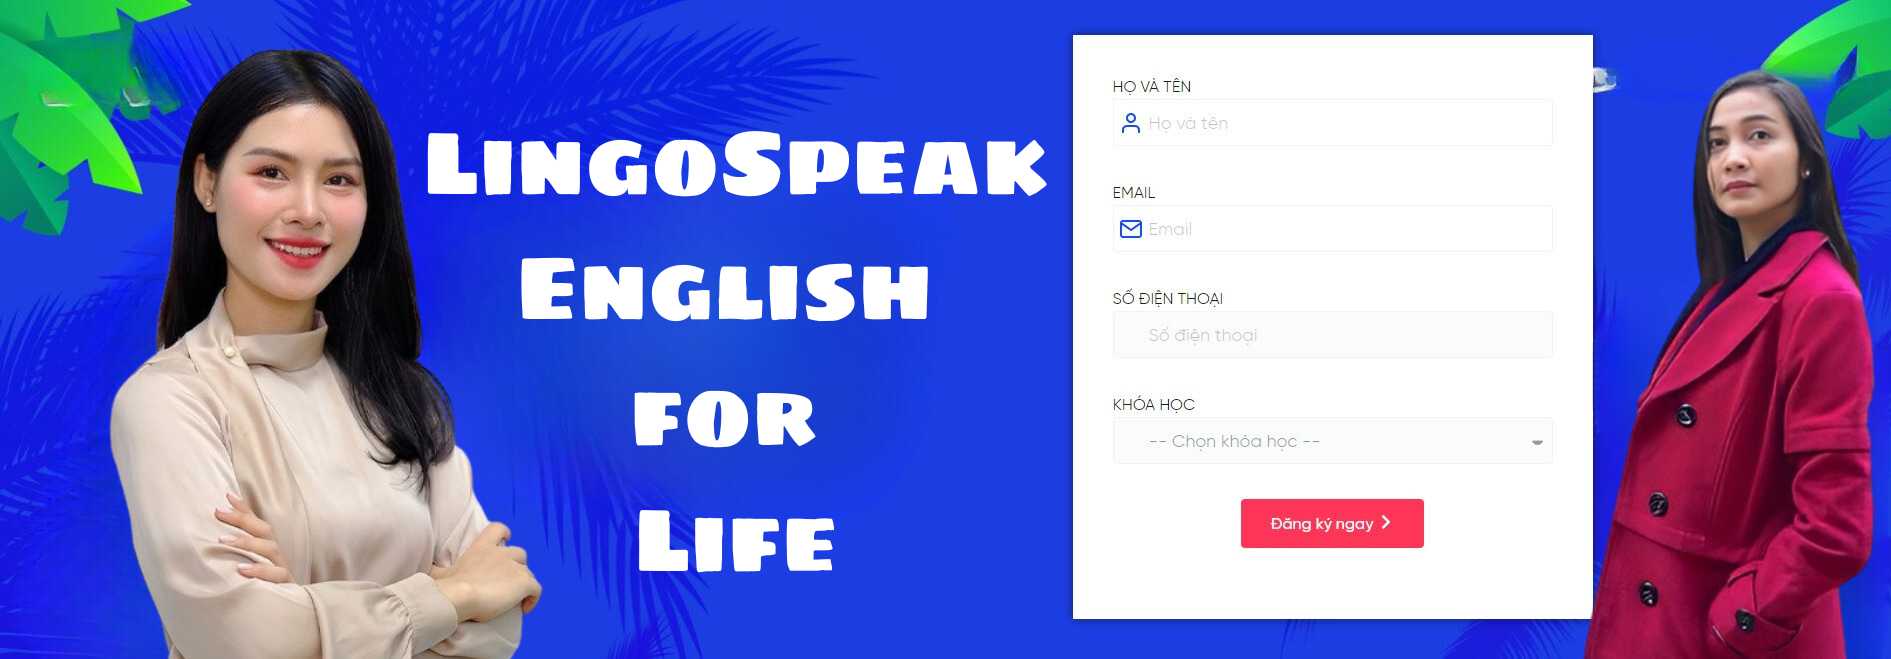 LingoSpeak English for Life